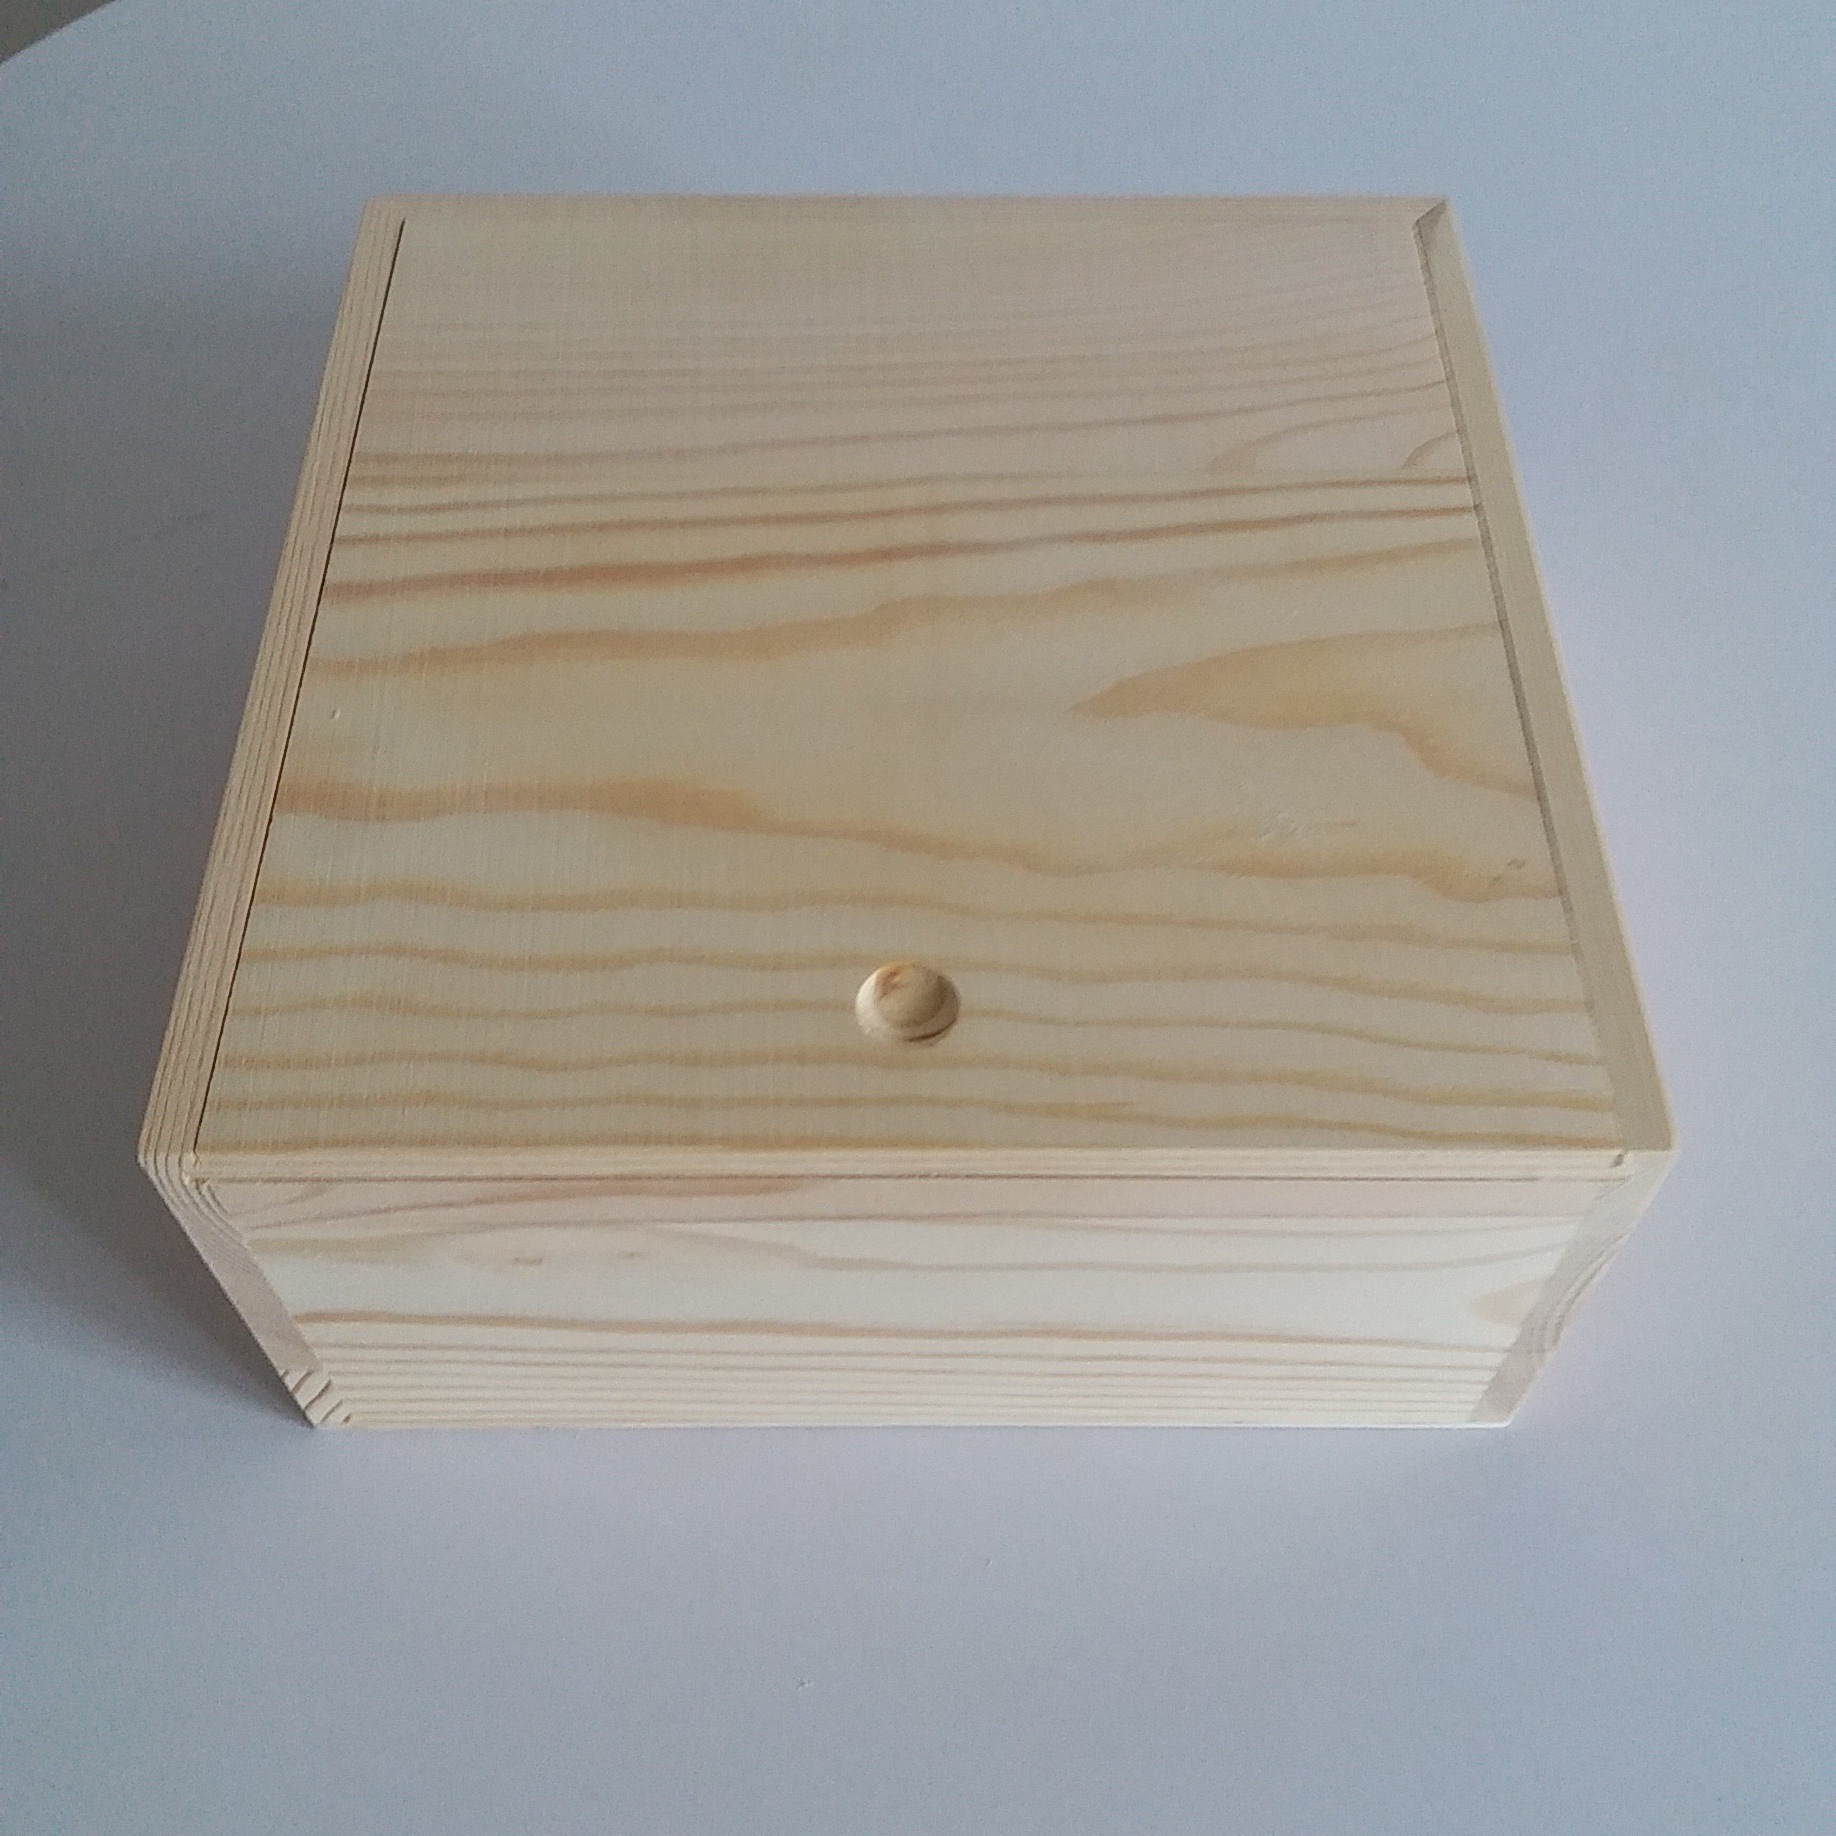 厂家生产直销各种木盒包装松木盒木质礼盒加工定做木盒包装盒